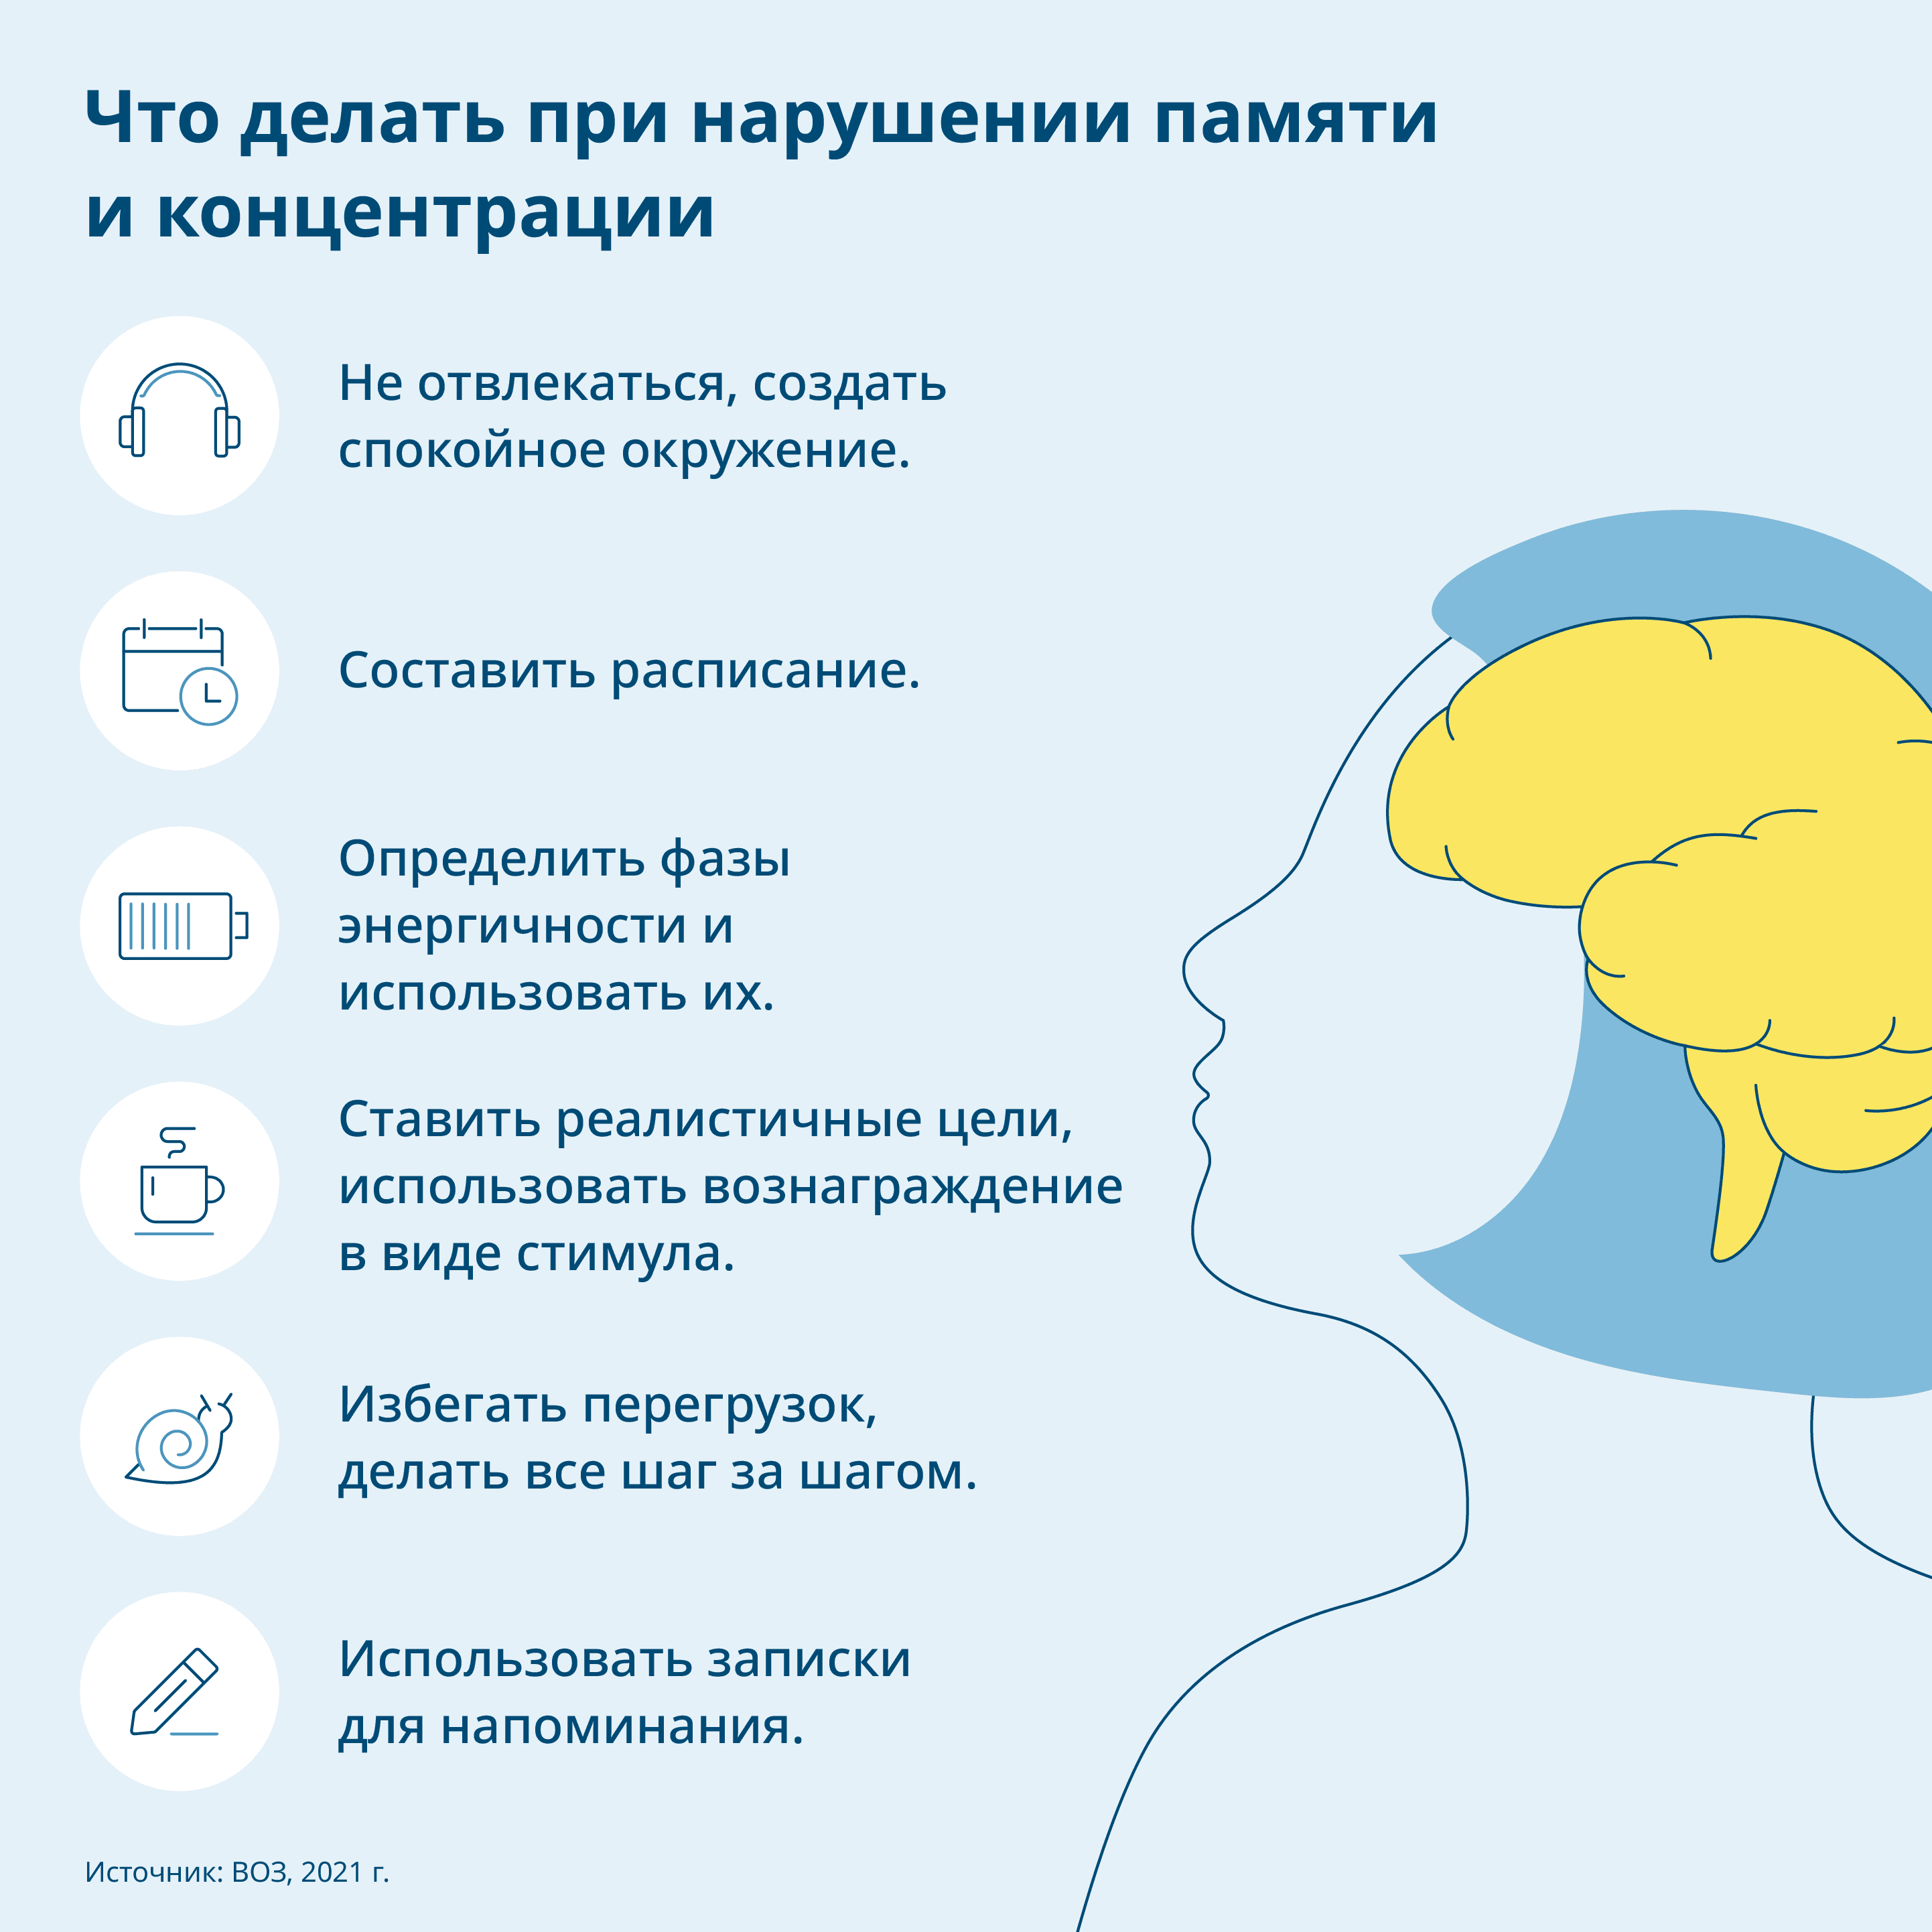 Графика: Рассматривая проблемы с памятью и концентрацией внимания, вы можете увидеть иллюстрацию мозга в человеческом теле, а также советы